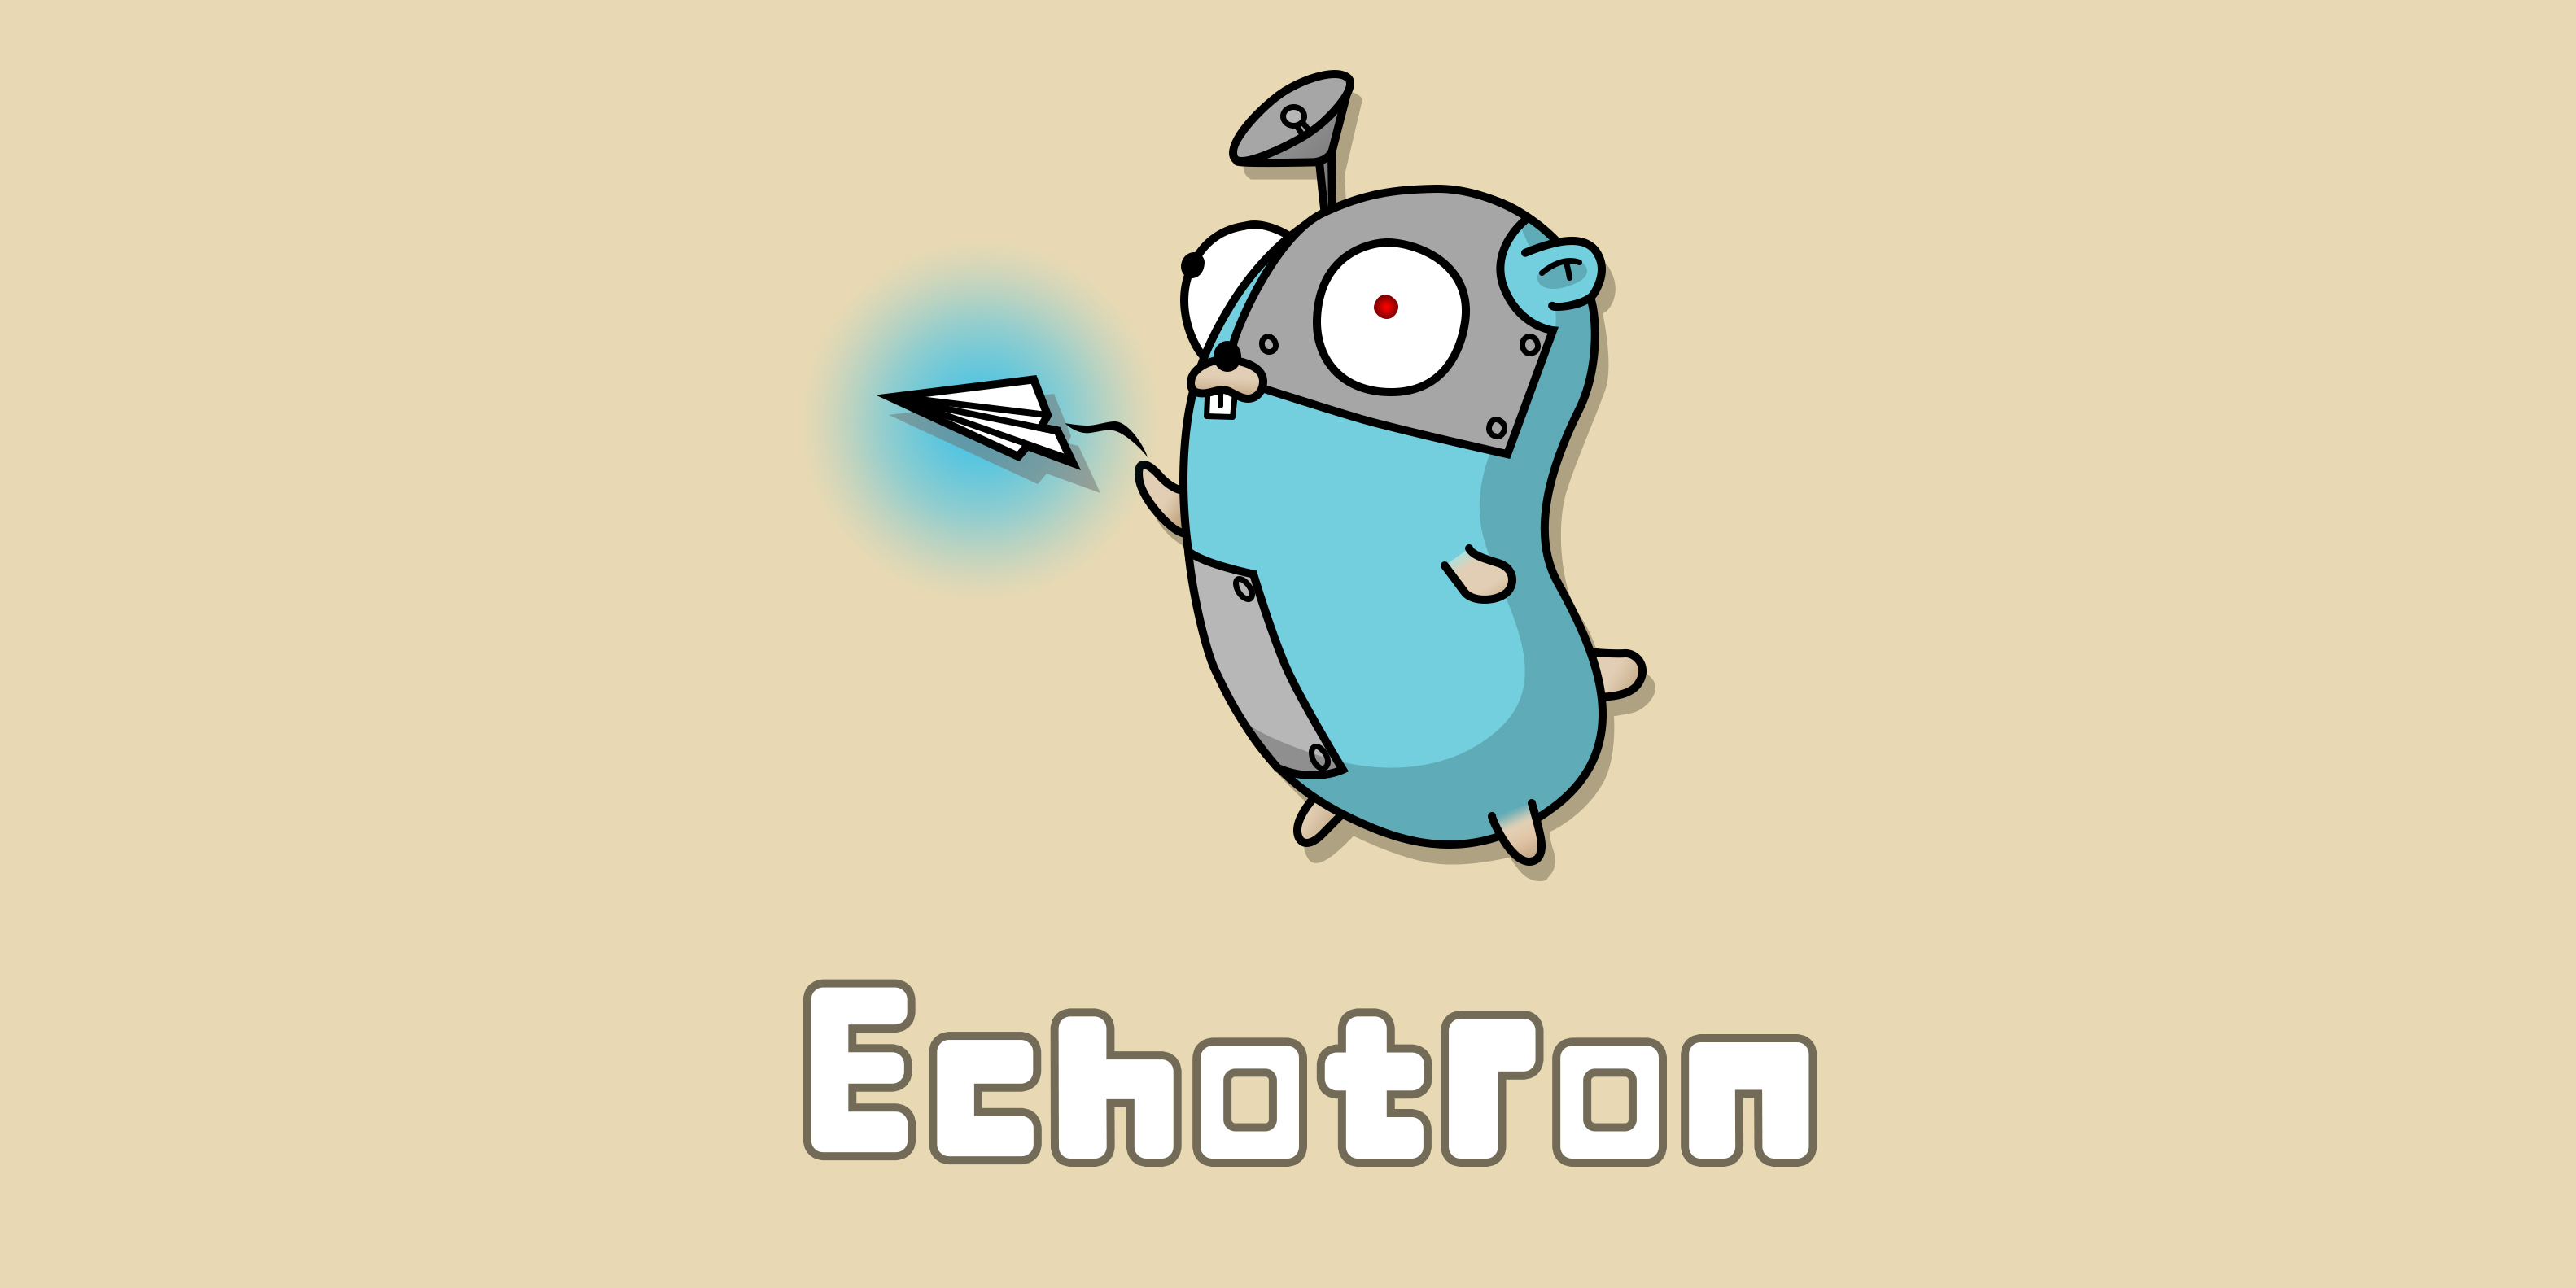 echotron